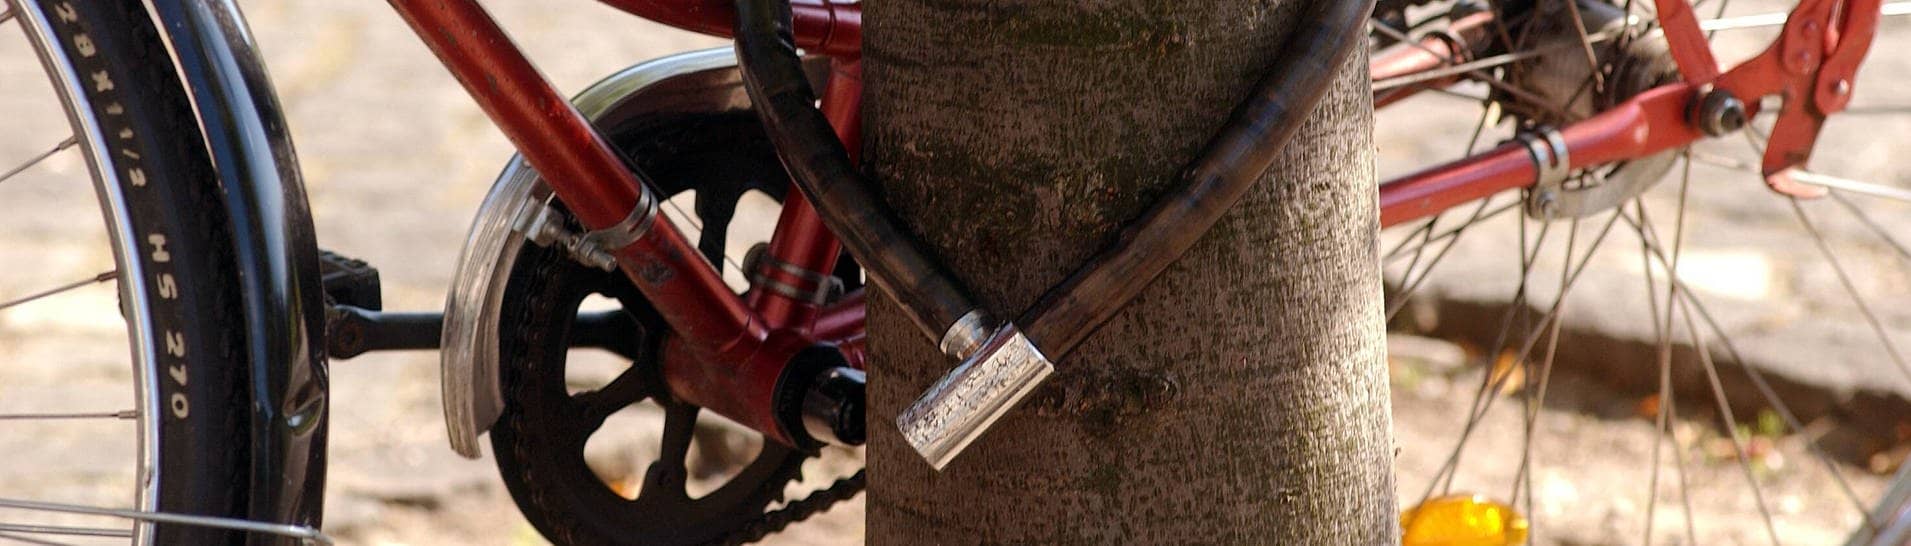 Symbolbild: Fahrrad mit einem Fahrradschloss gesichert an einem Baum